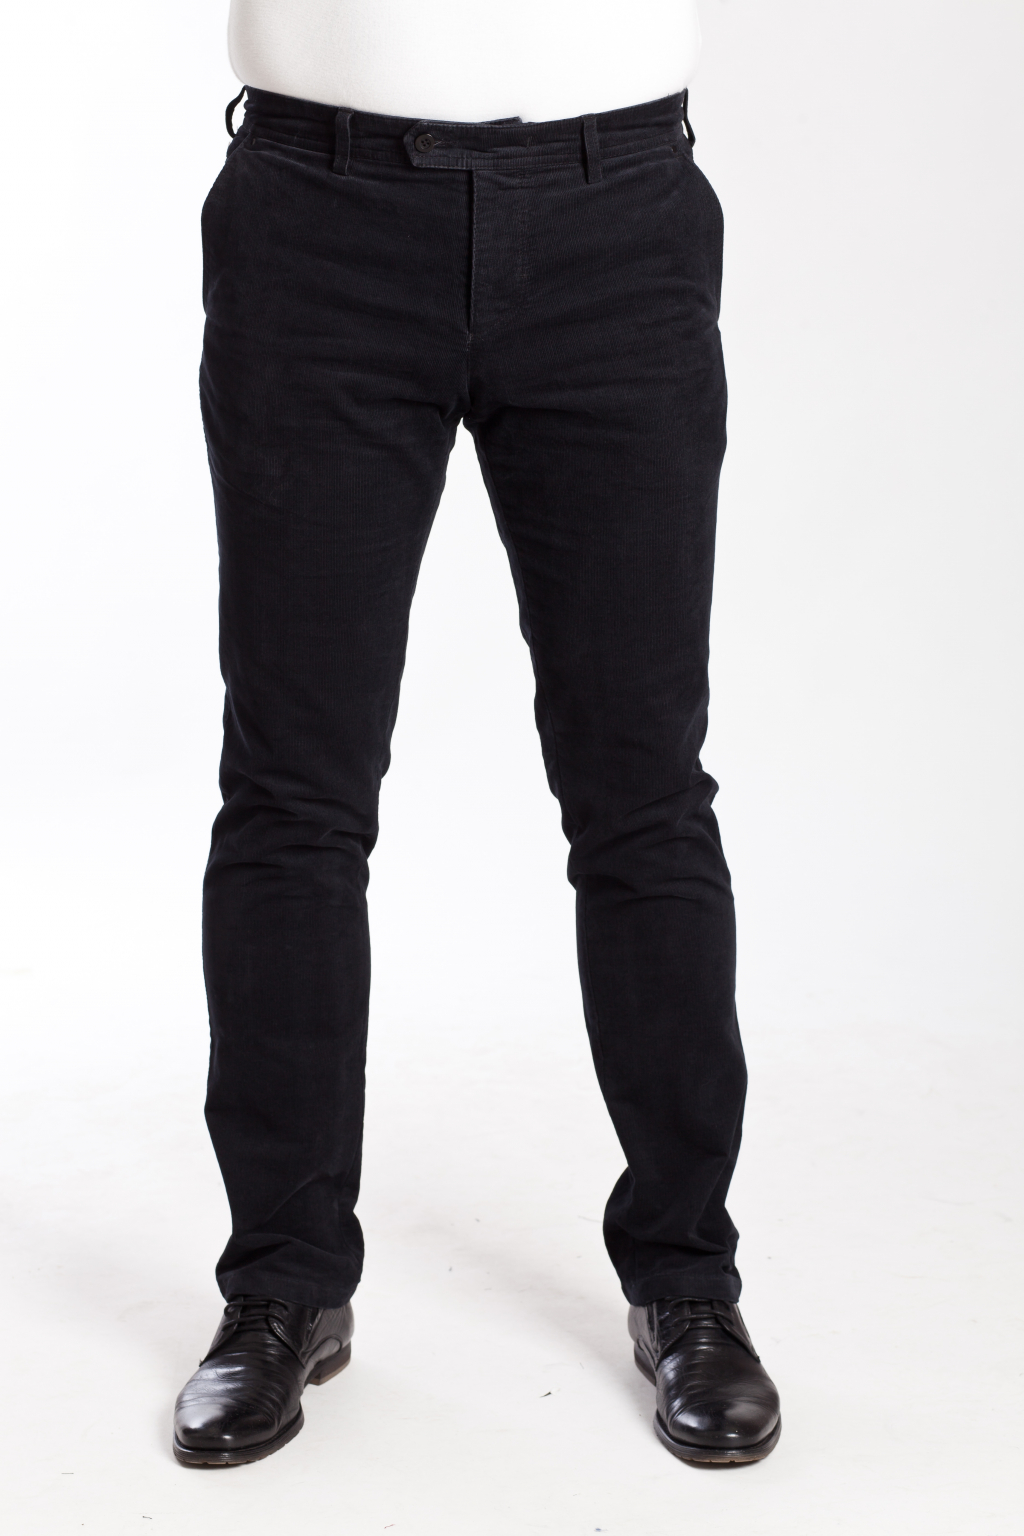 Молодежные мужские брюки: купить в интернет-магазине «Мир брюк»